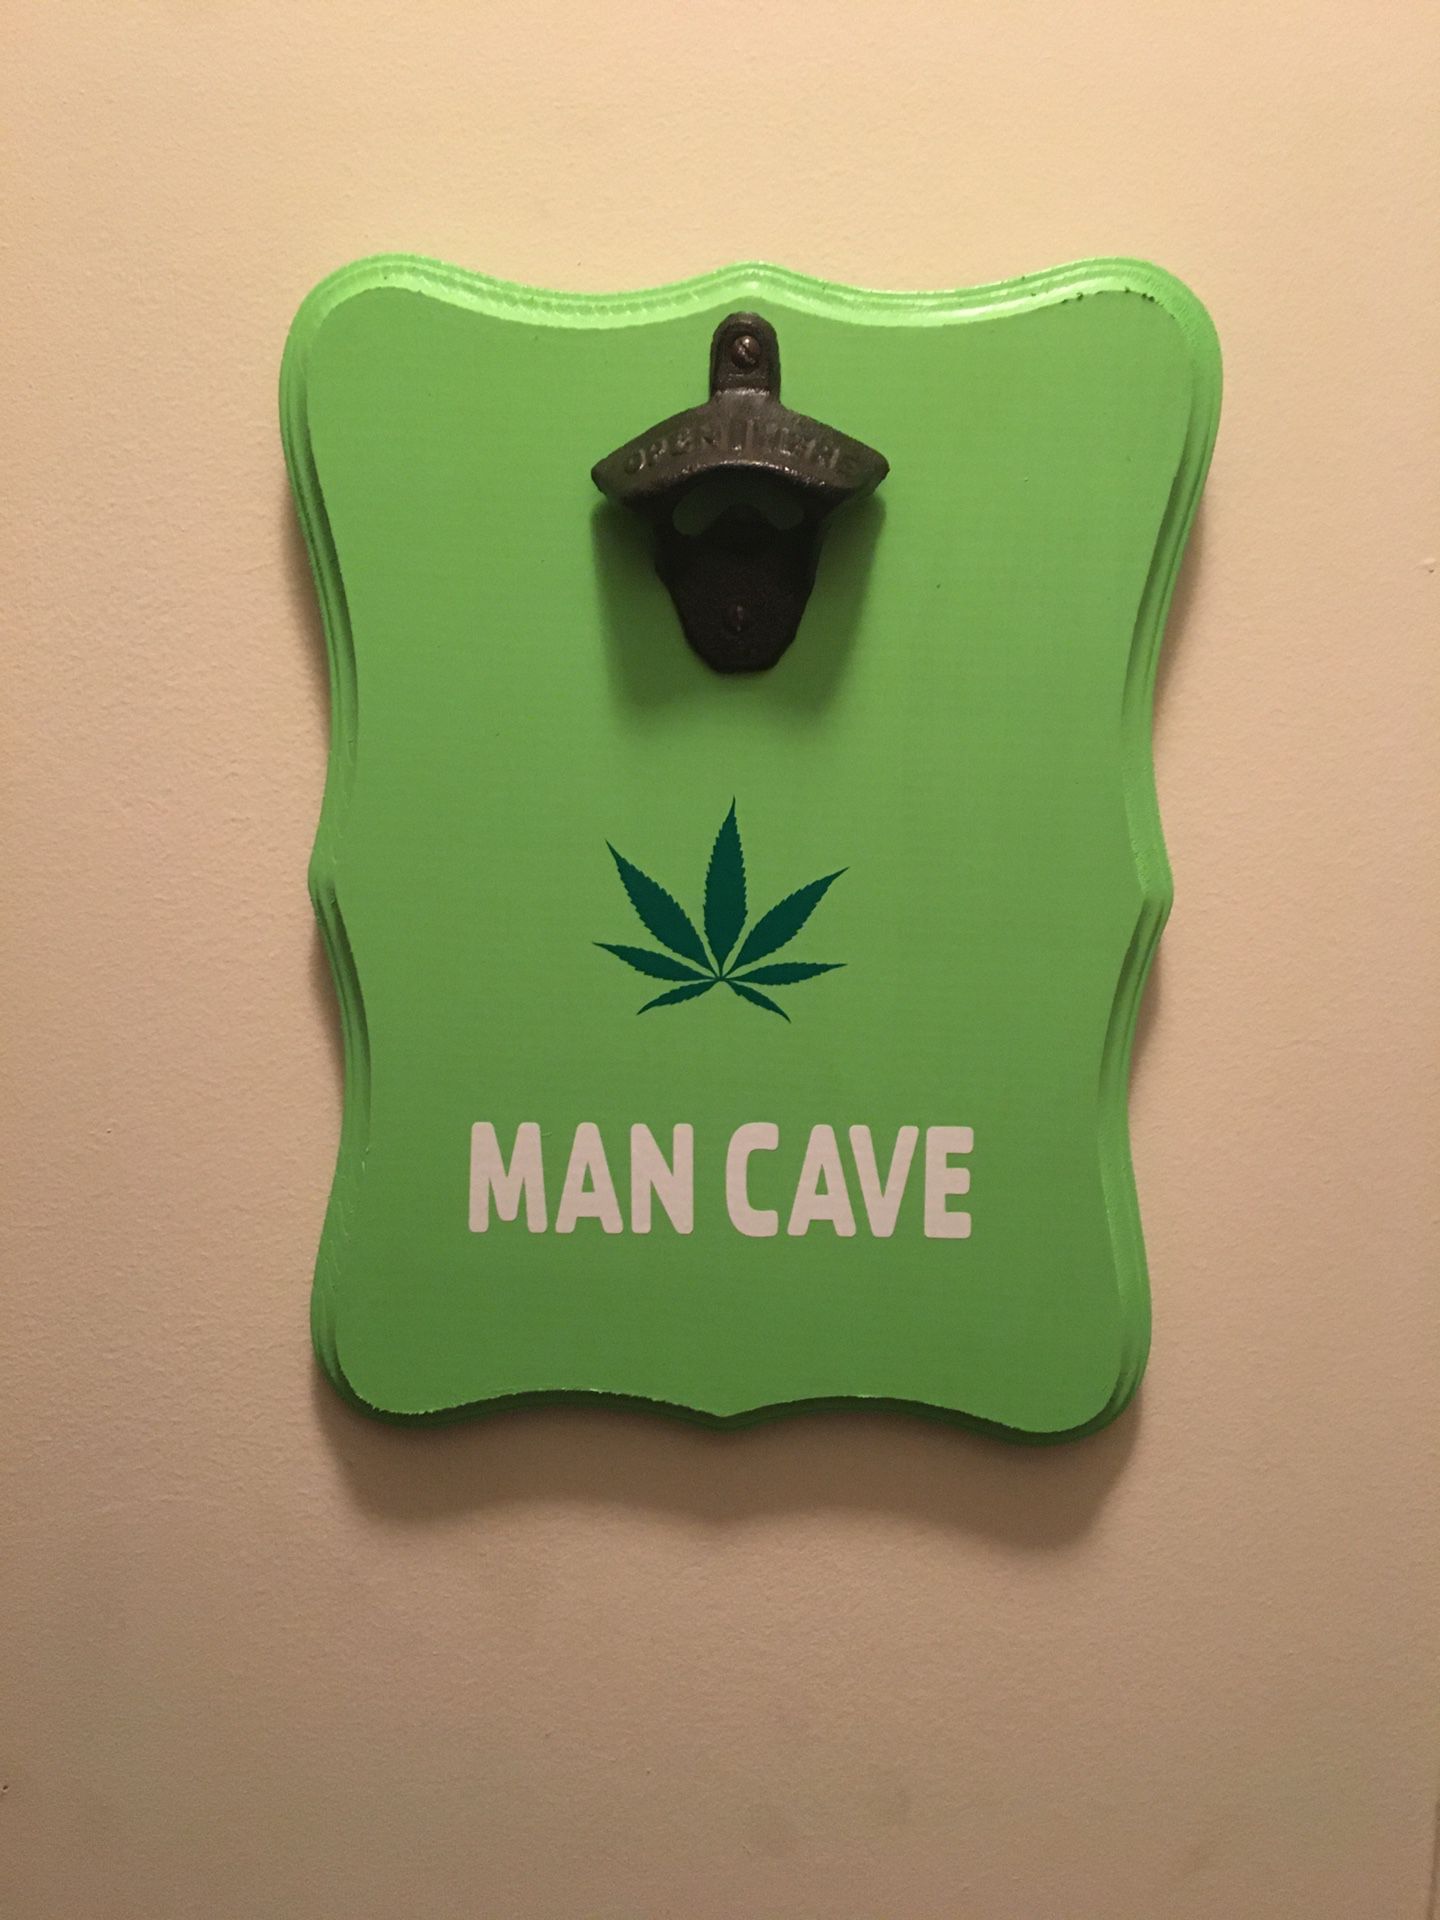 Man Cave Plaques